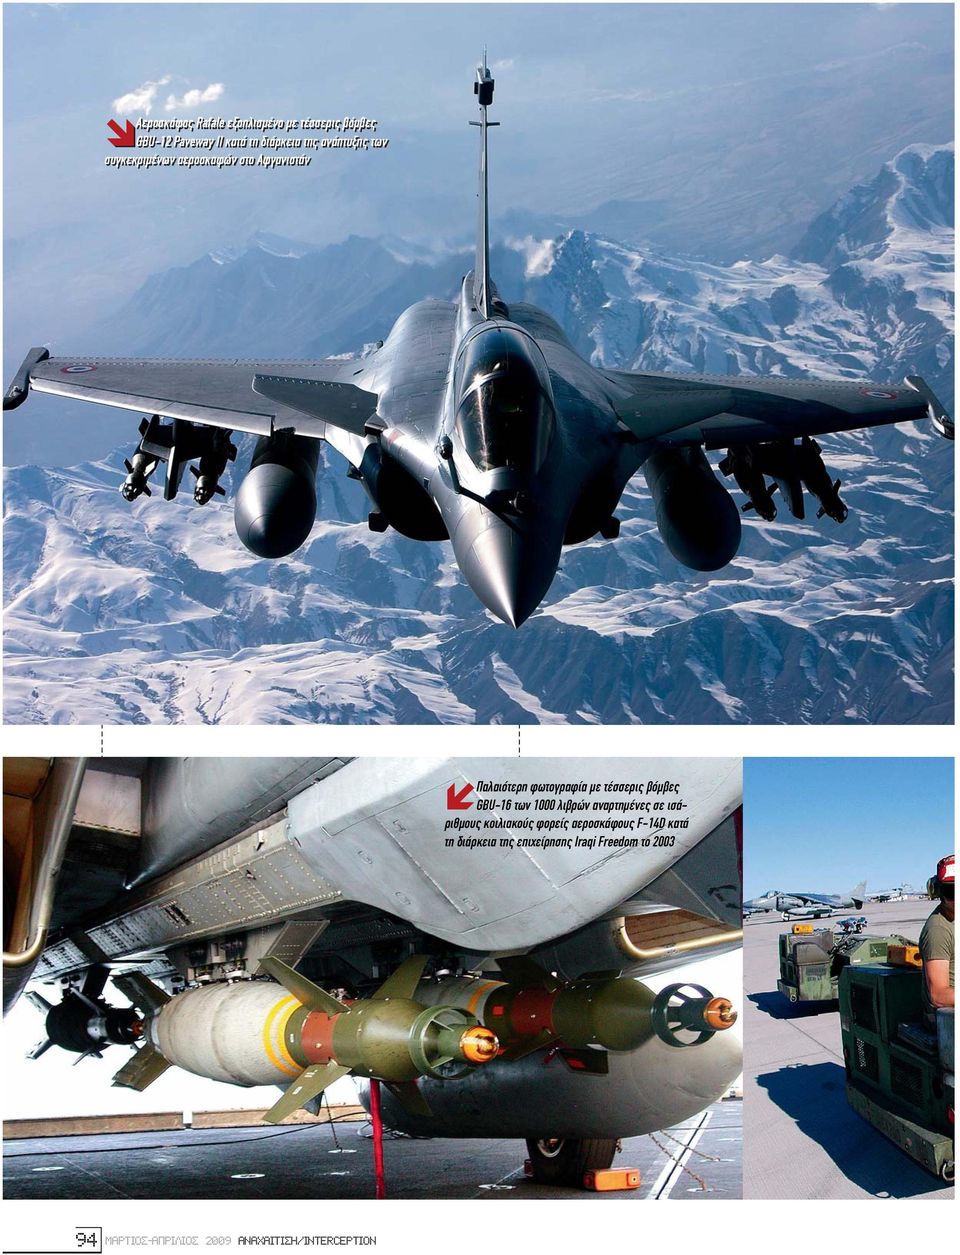 βόµβες GBU-16 των 1000 λιβρών αναρτηµένες σε ισάριθµους κοιλιακούς φορείς αεροσκάφους F-14D